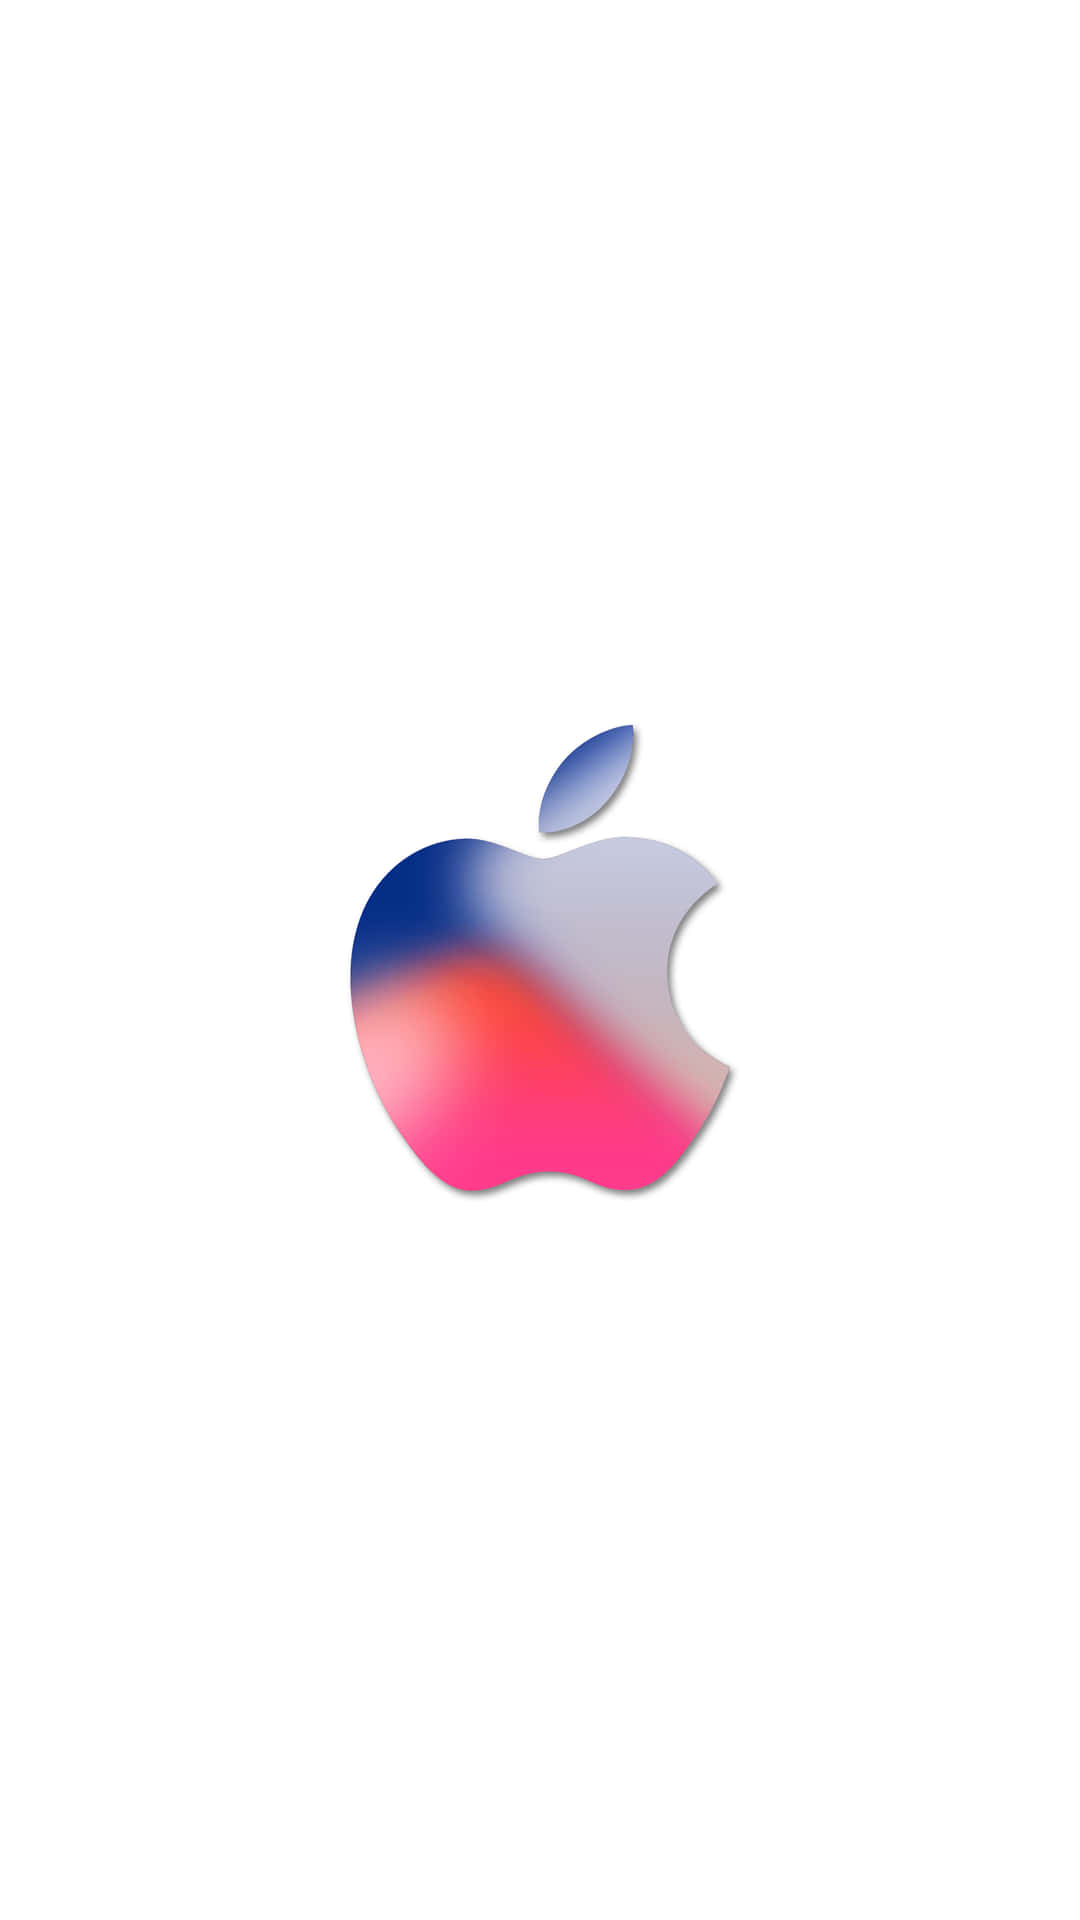 Celebrala Innovación Moderna Y El Diseño Eterno De Apple.